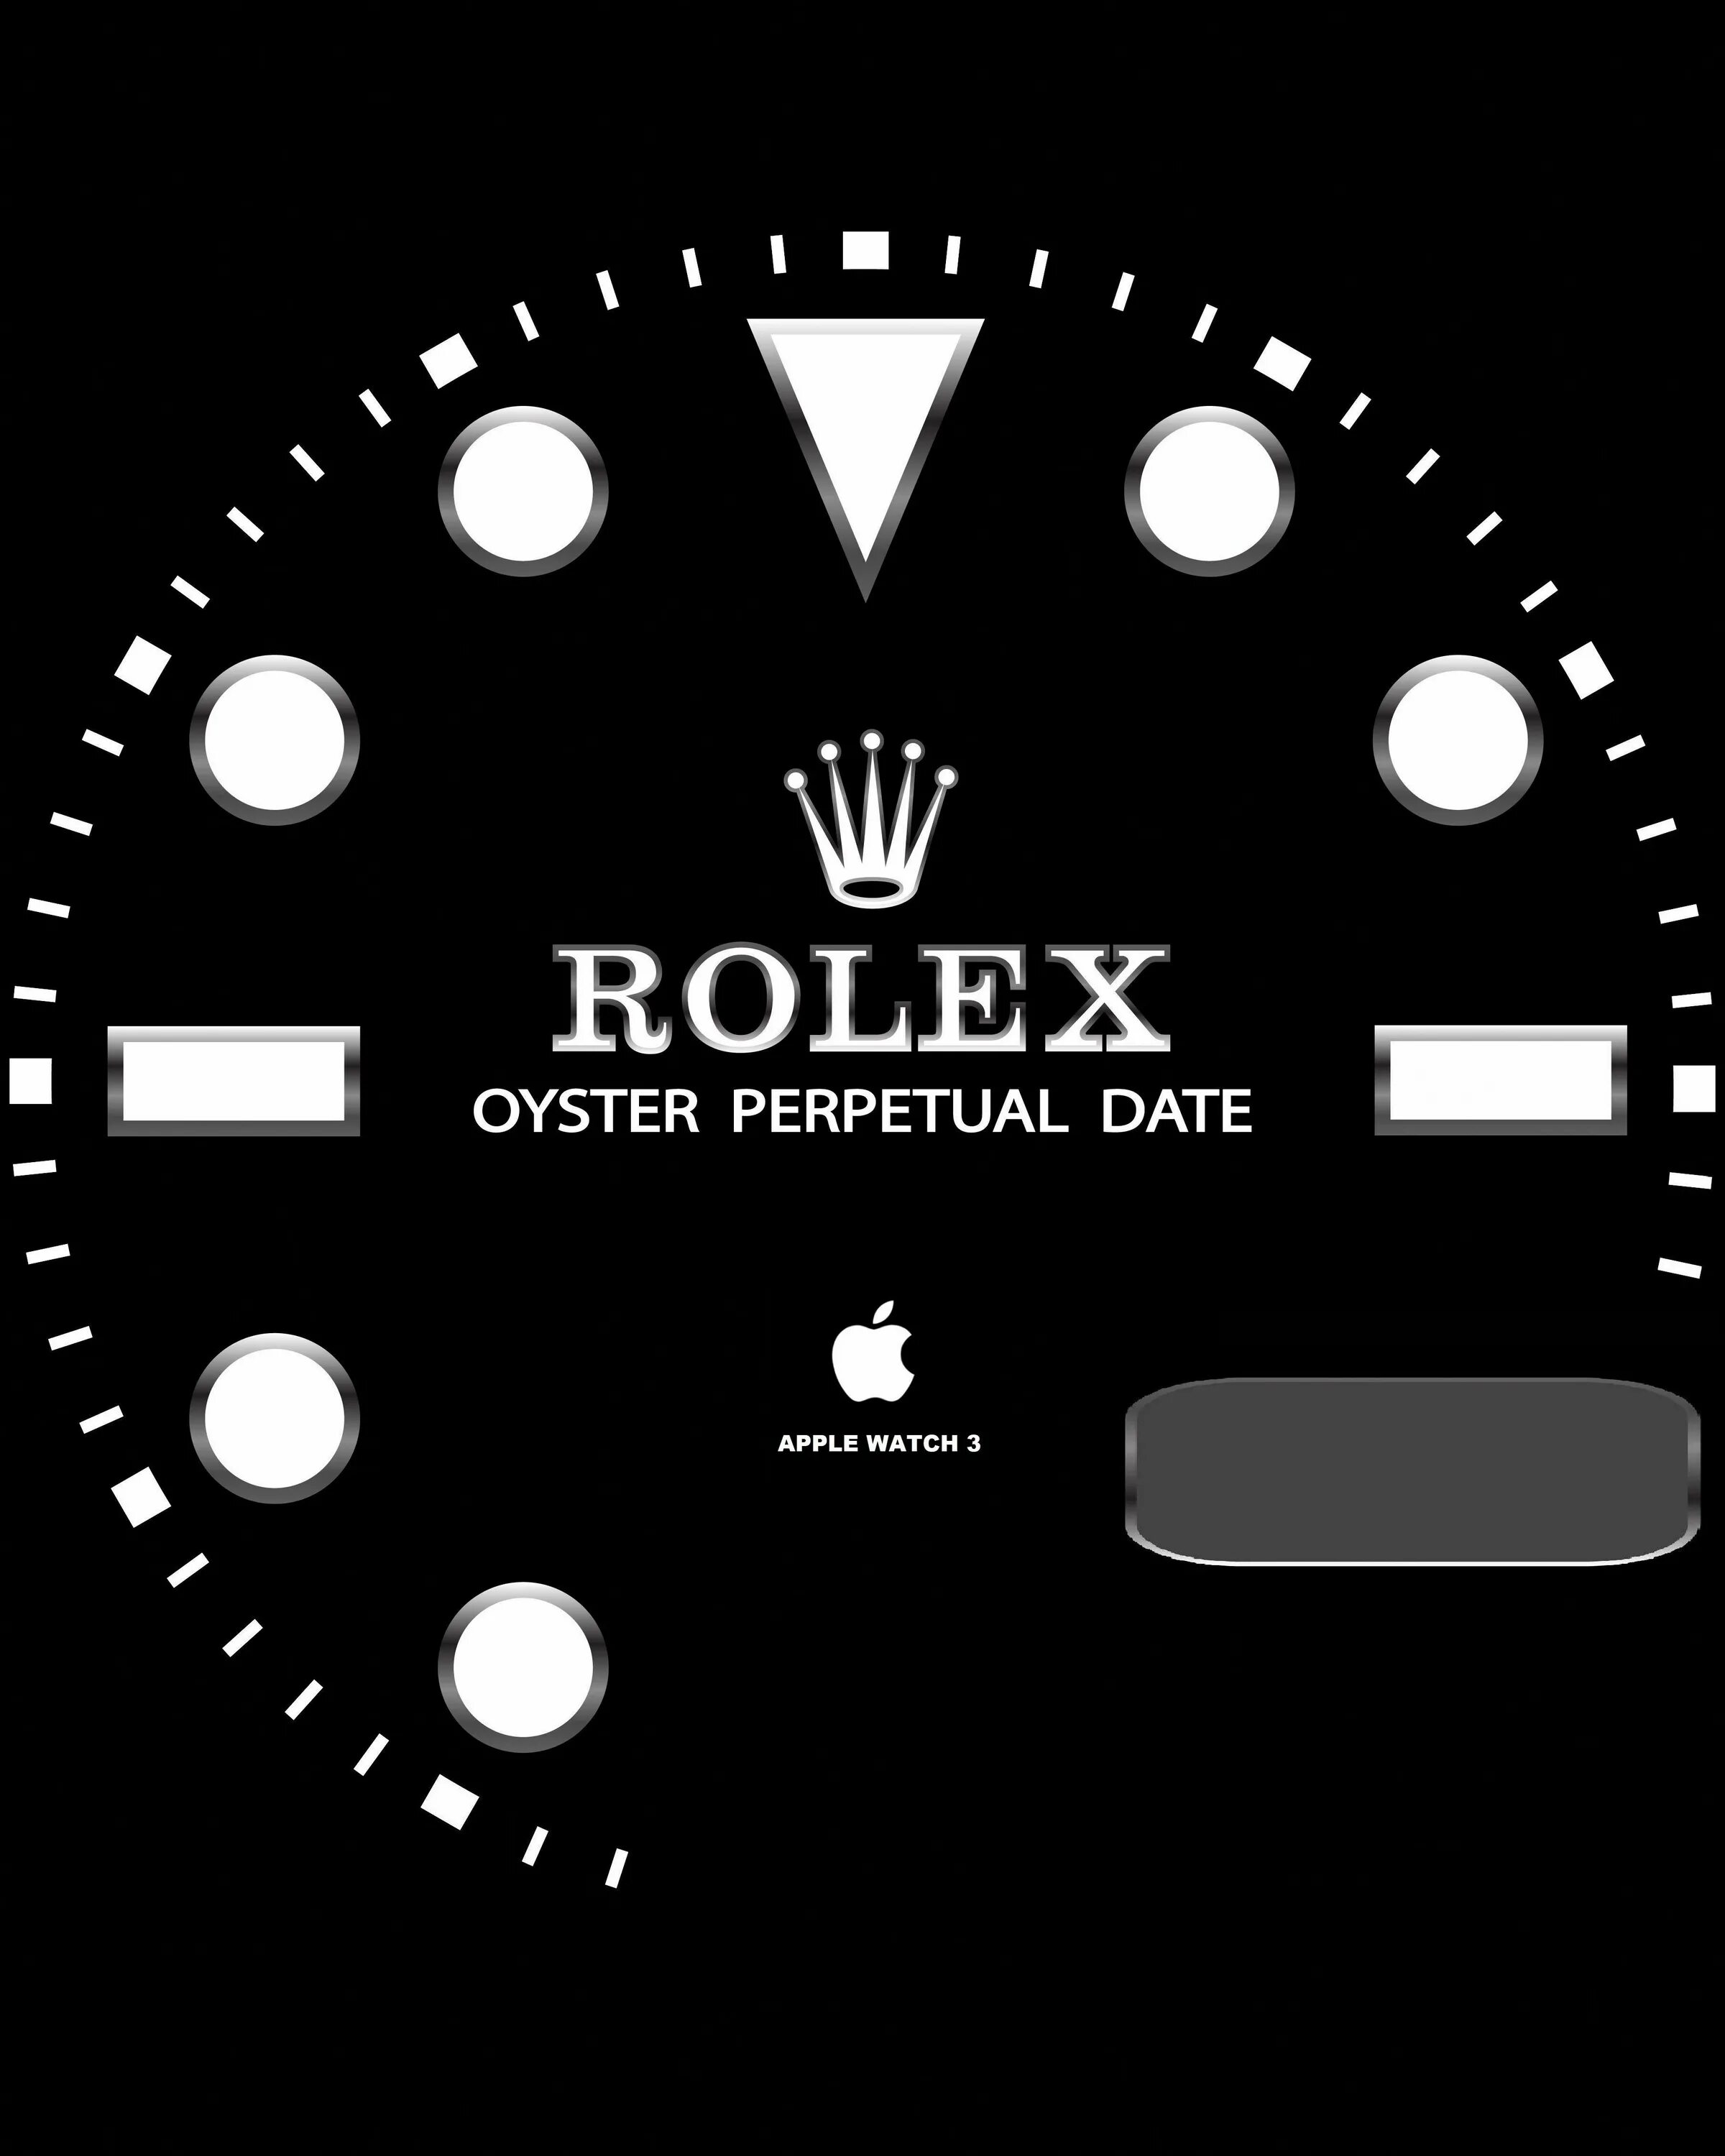 Циферблаты для Apple IWATCH 7 Rolex. Циферблат Эппл вотч 7. Циферблат ролекс для Apple watch 7. Циферблат Rolex для Apple watch. Циферблат часов на айфоне